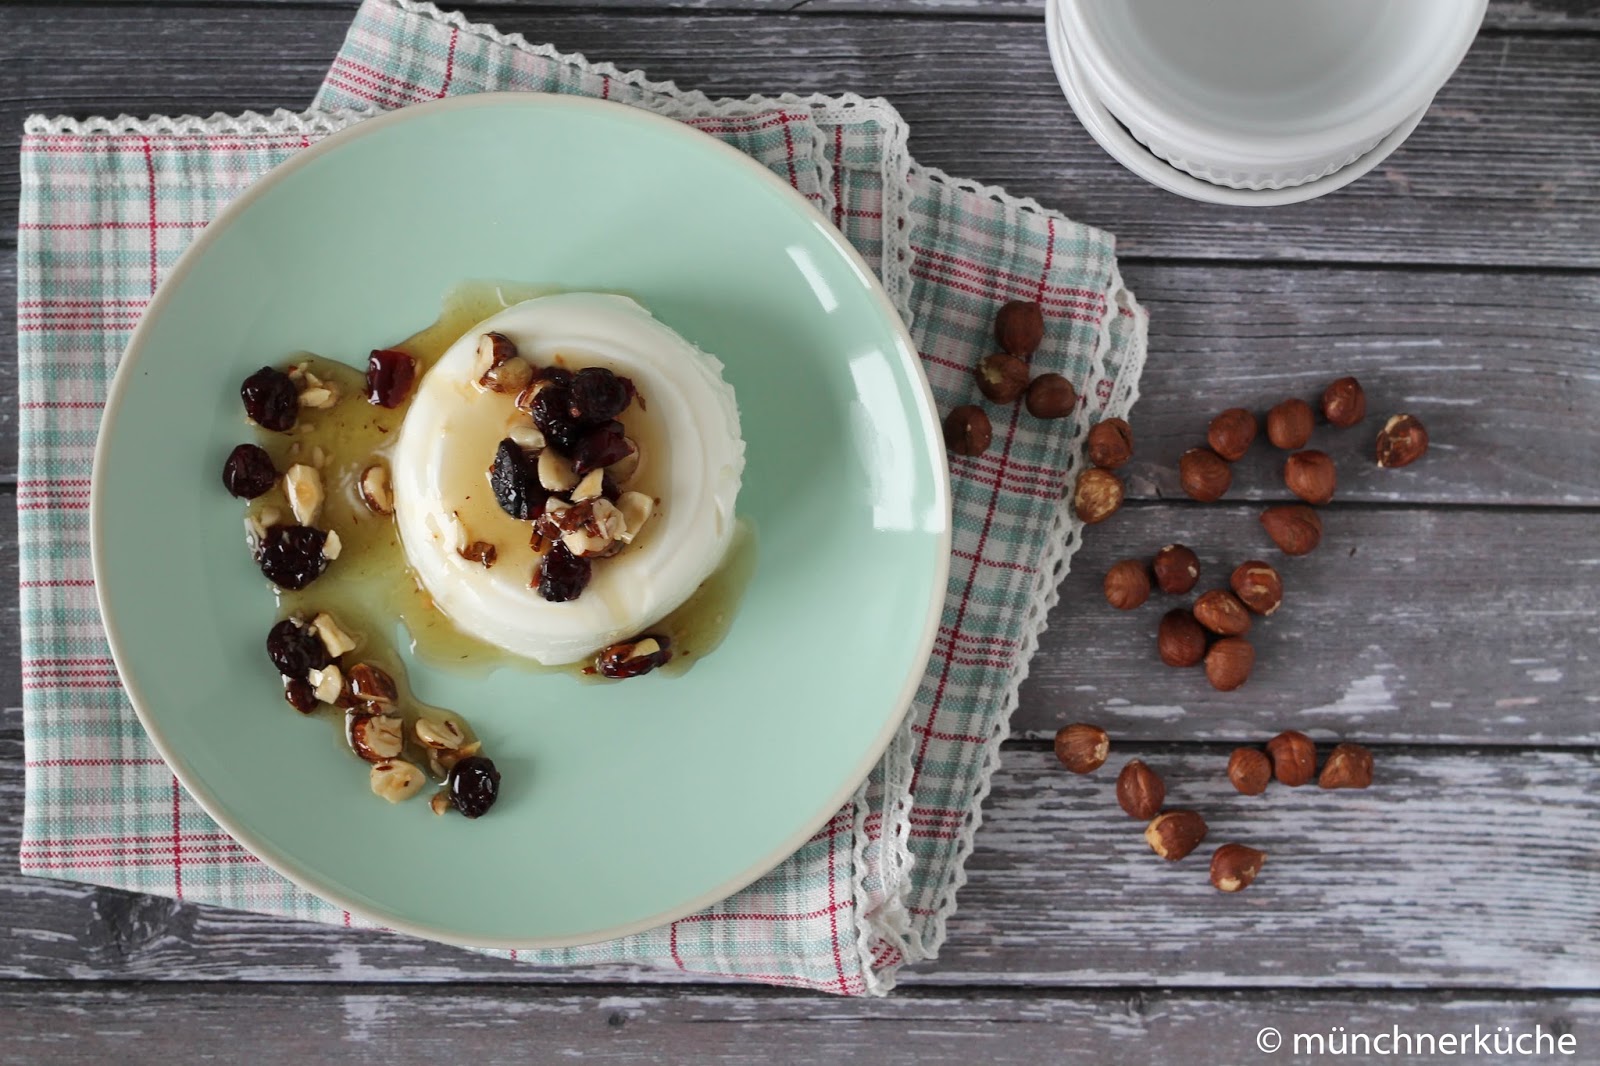 münchnerküche: Joghurt-Terrine mit Haselnuss-Cranberry-Honigsauce